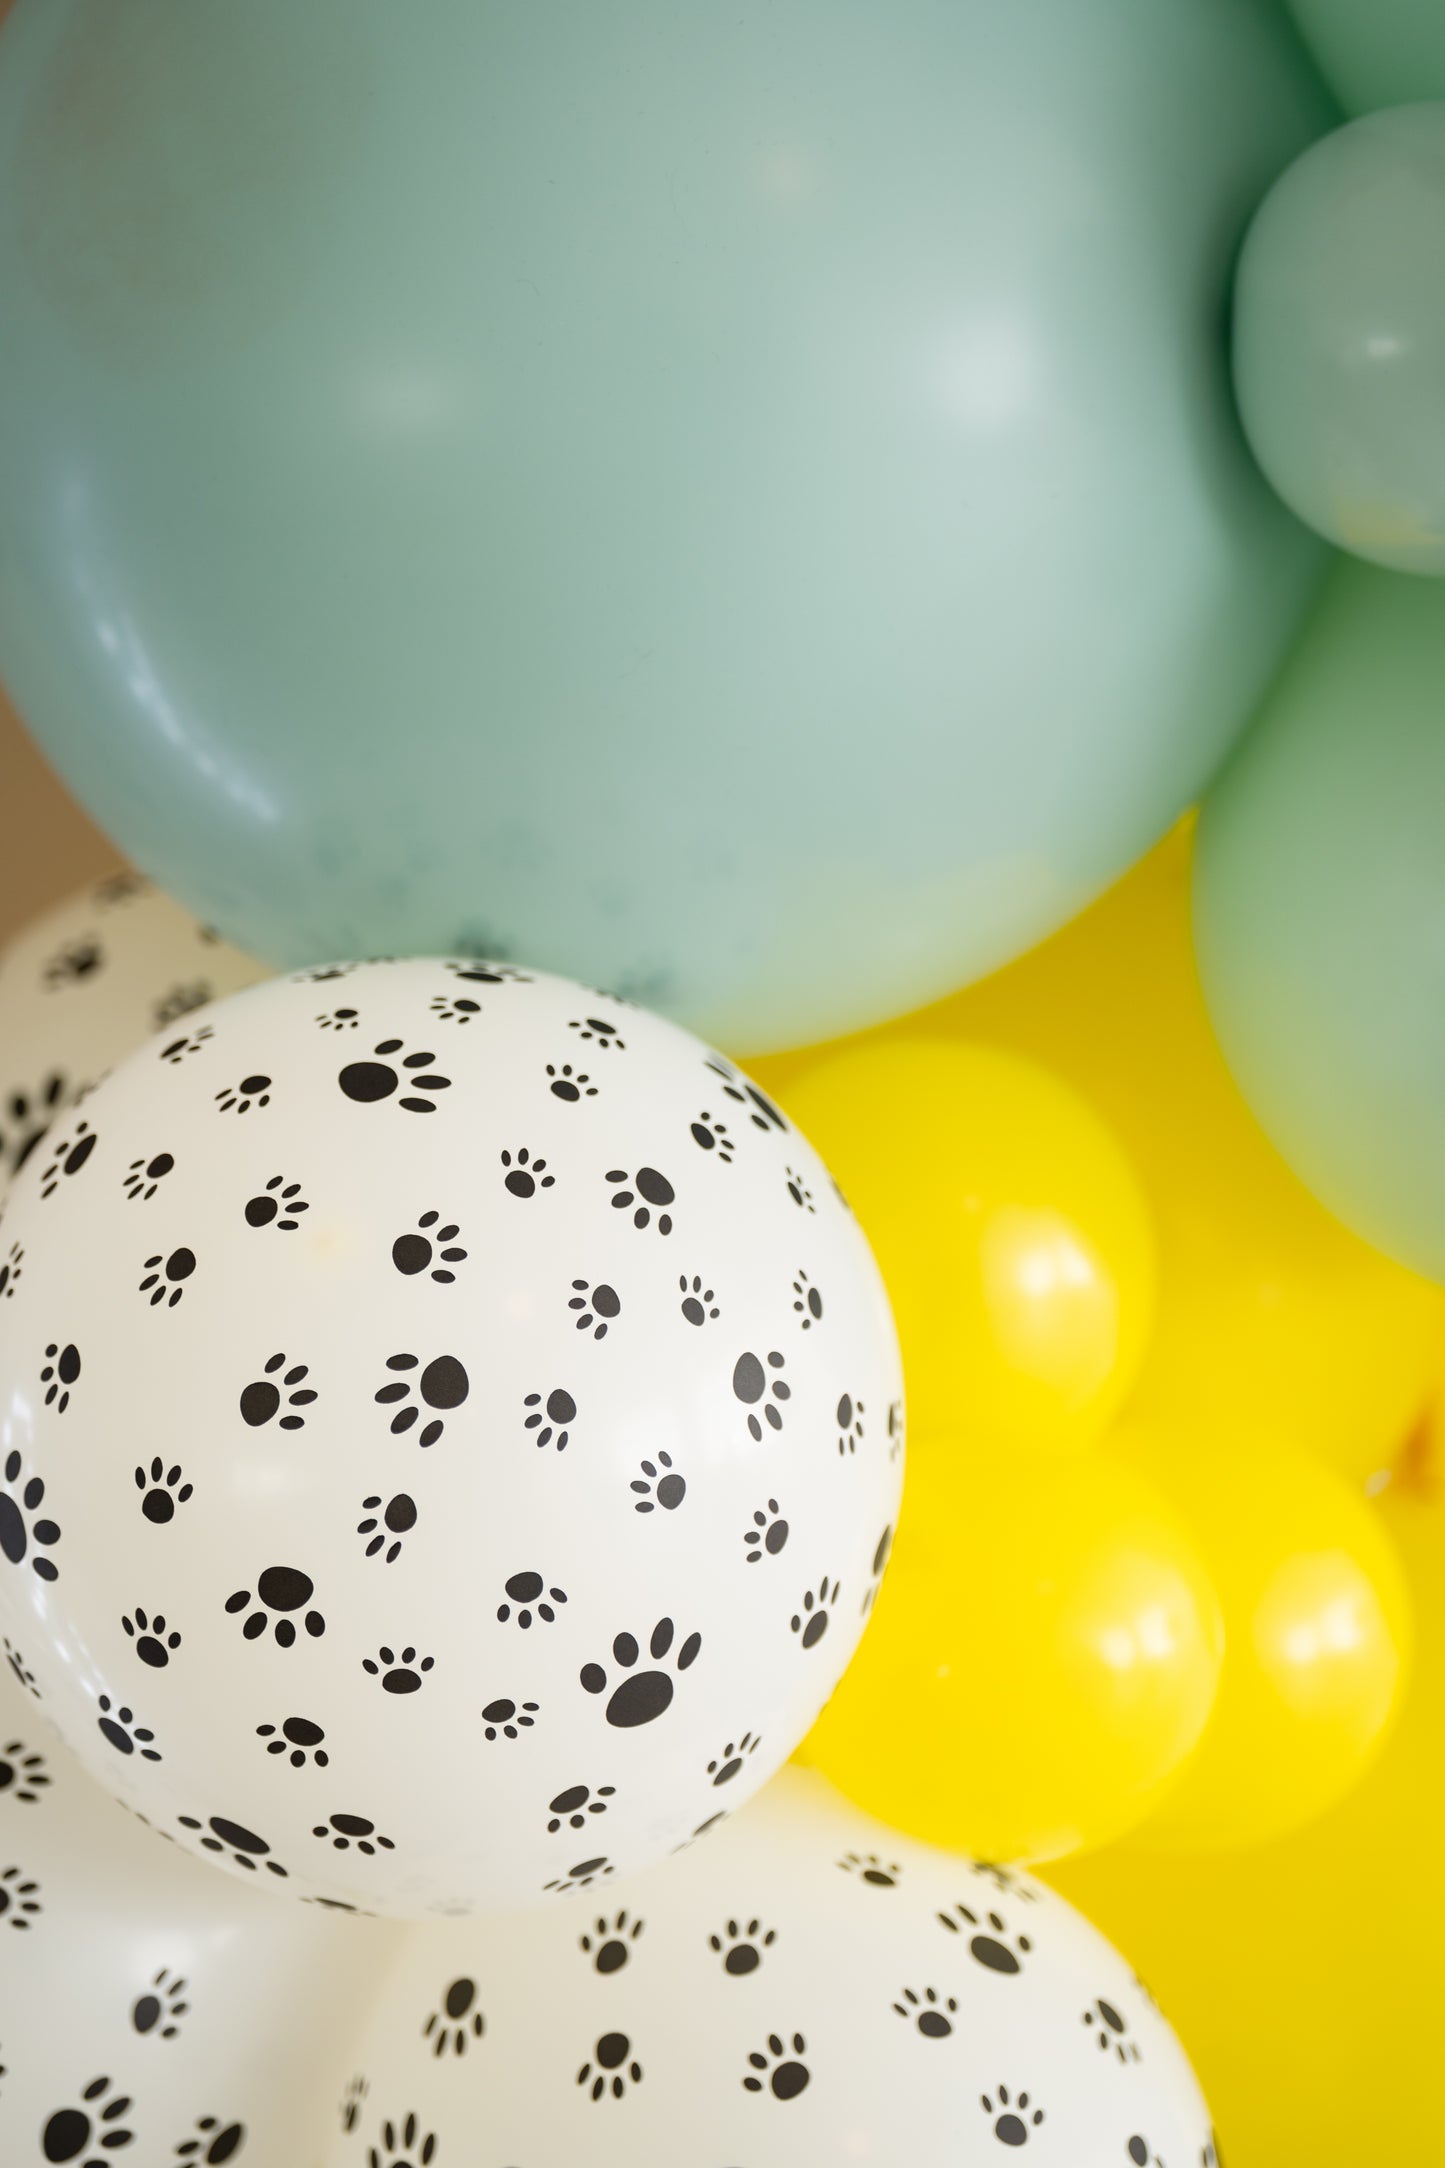 Puppy Party Balloon Garland